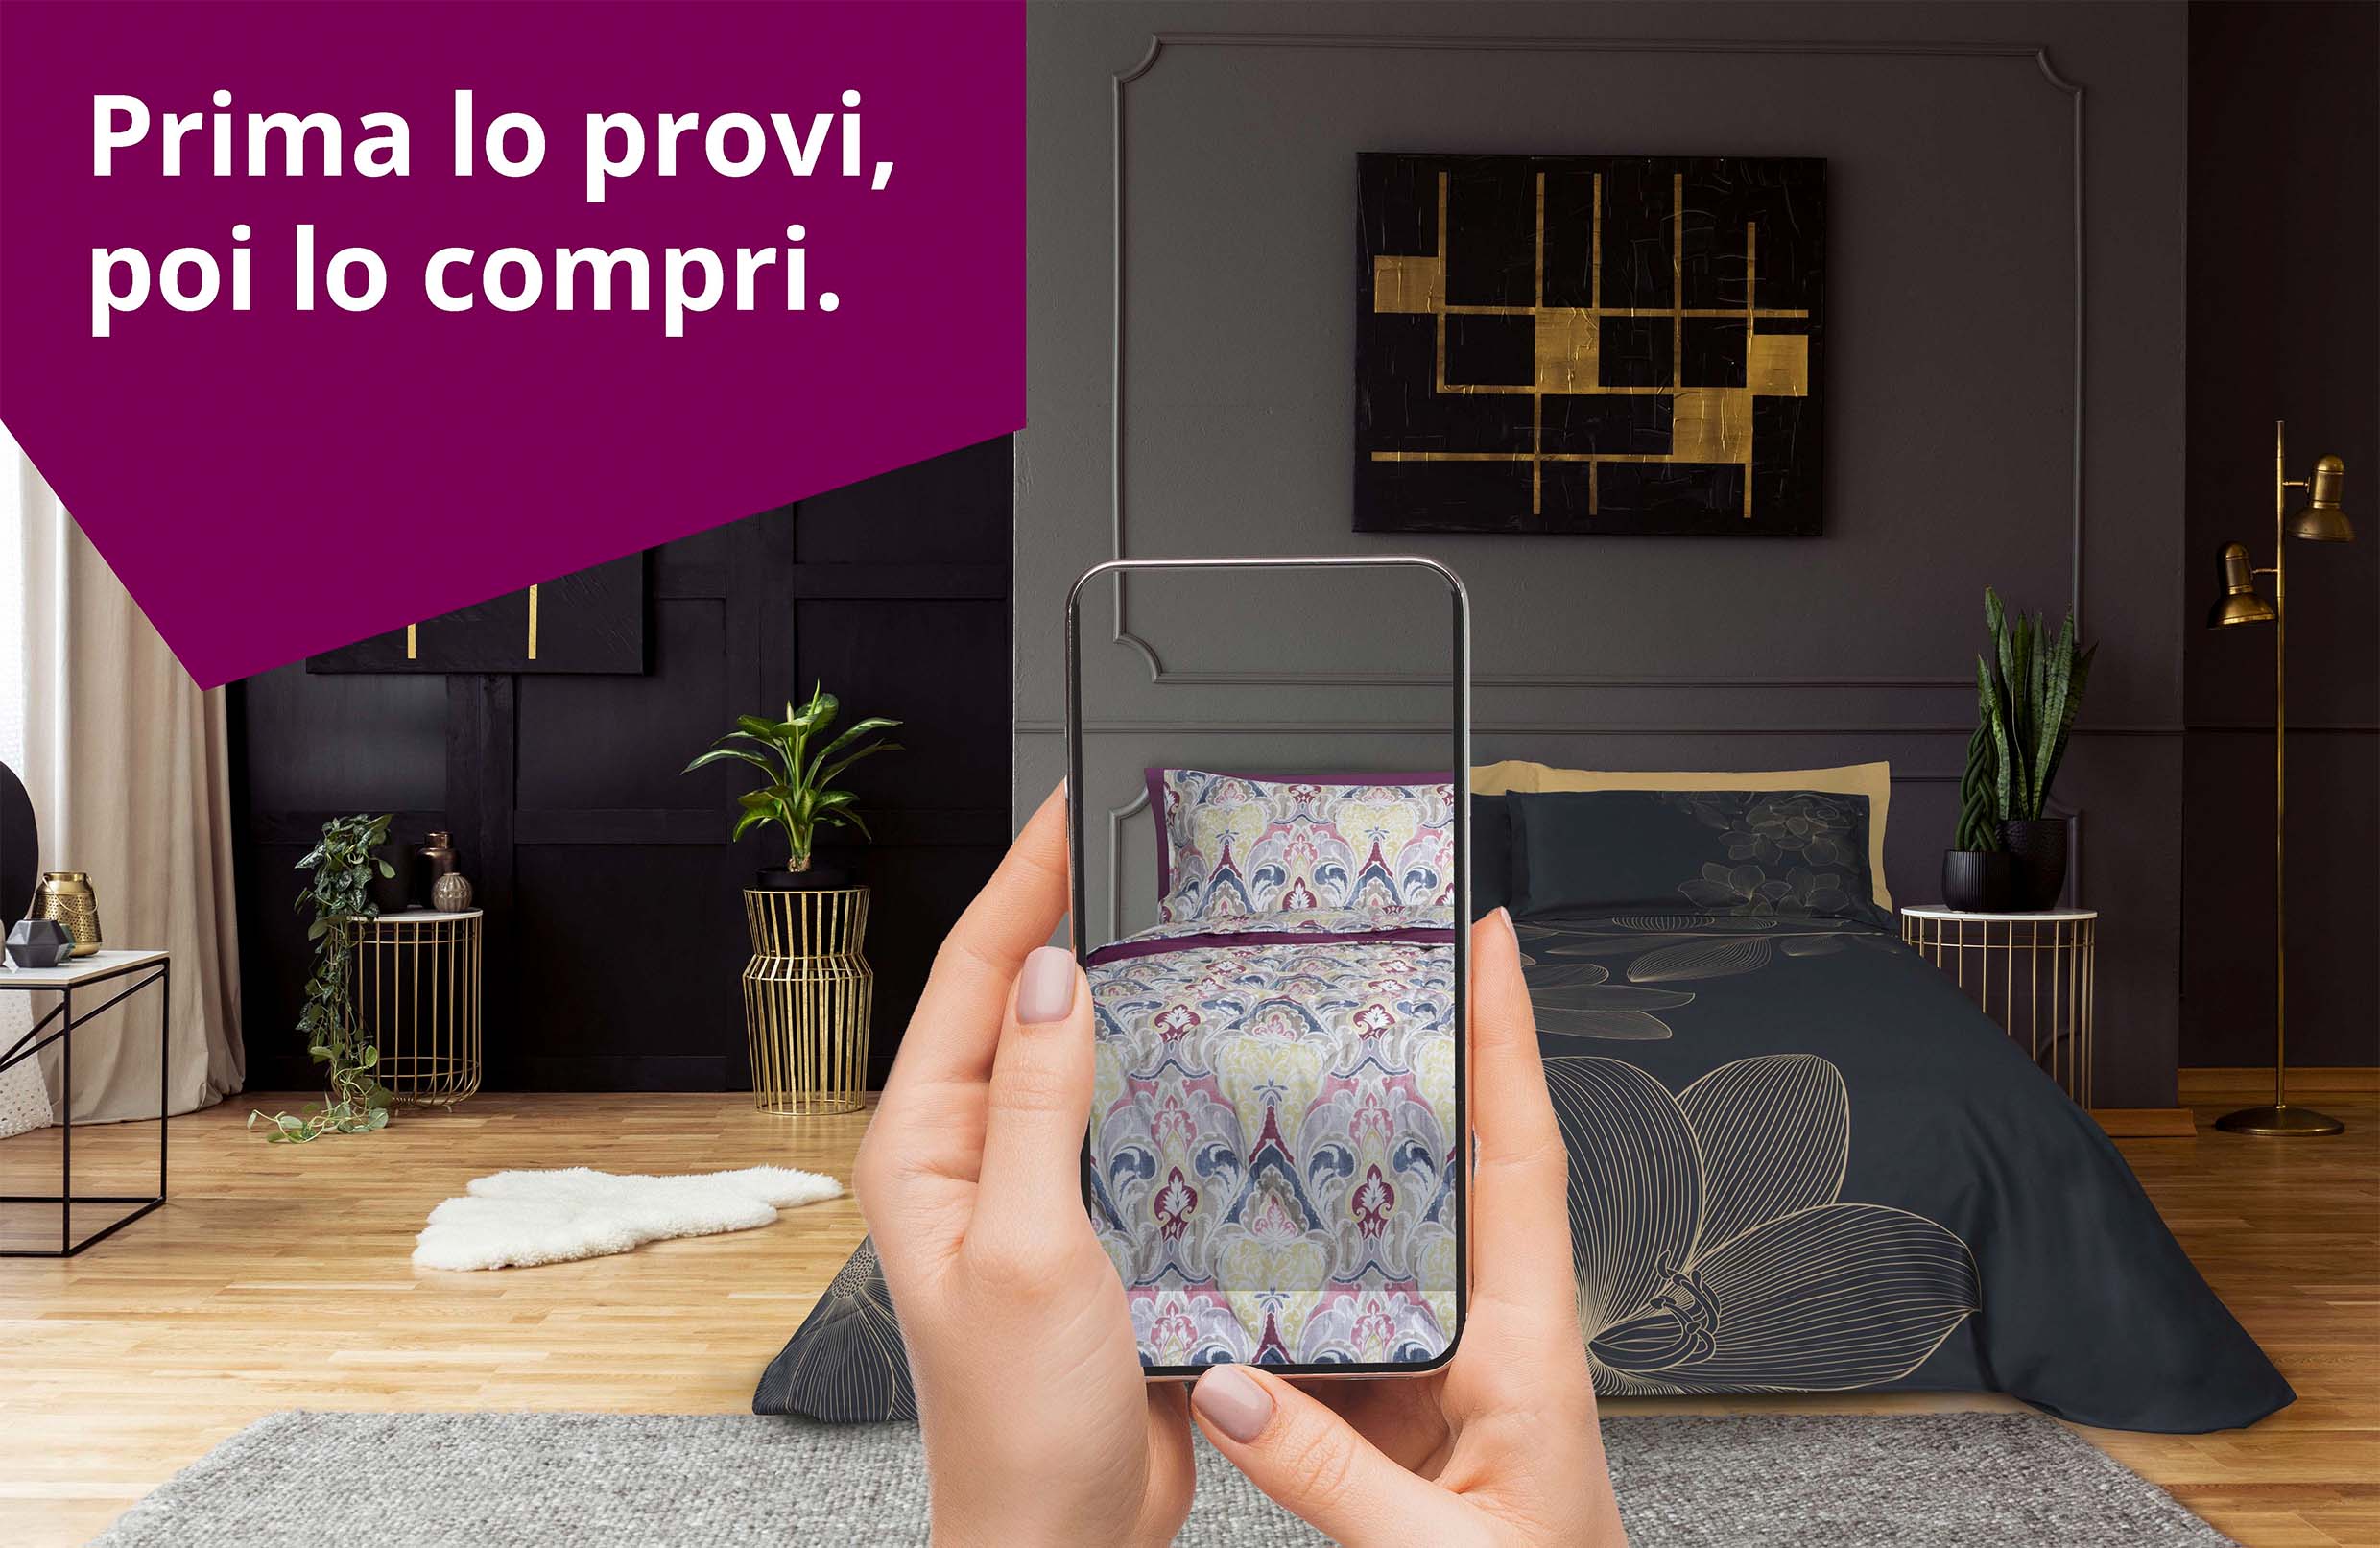 Nasce CASAhomewear, l’app gratuita che permette di inquadrare il proprio letto da smartphone per cambiare la biancheria